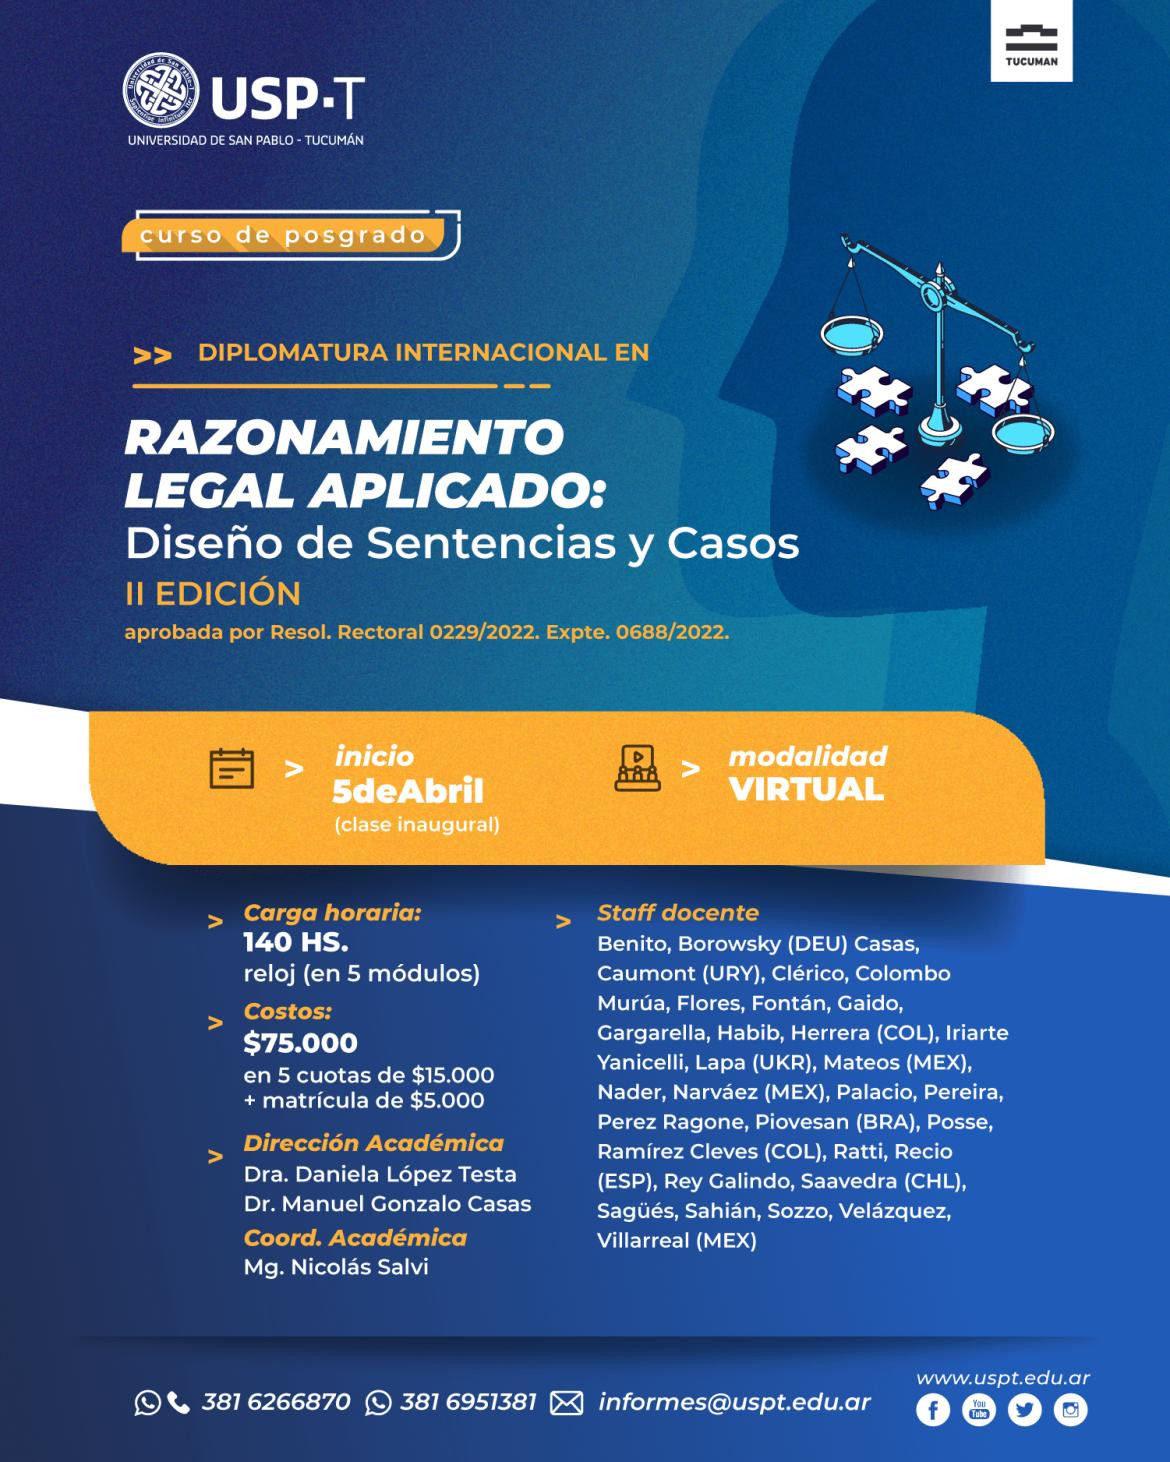 Nueva edición del exitoso posgrado internacional en “Razonamiento legal aplicado”, de la Universidad San Pablo -Tucumán